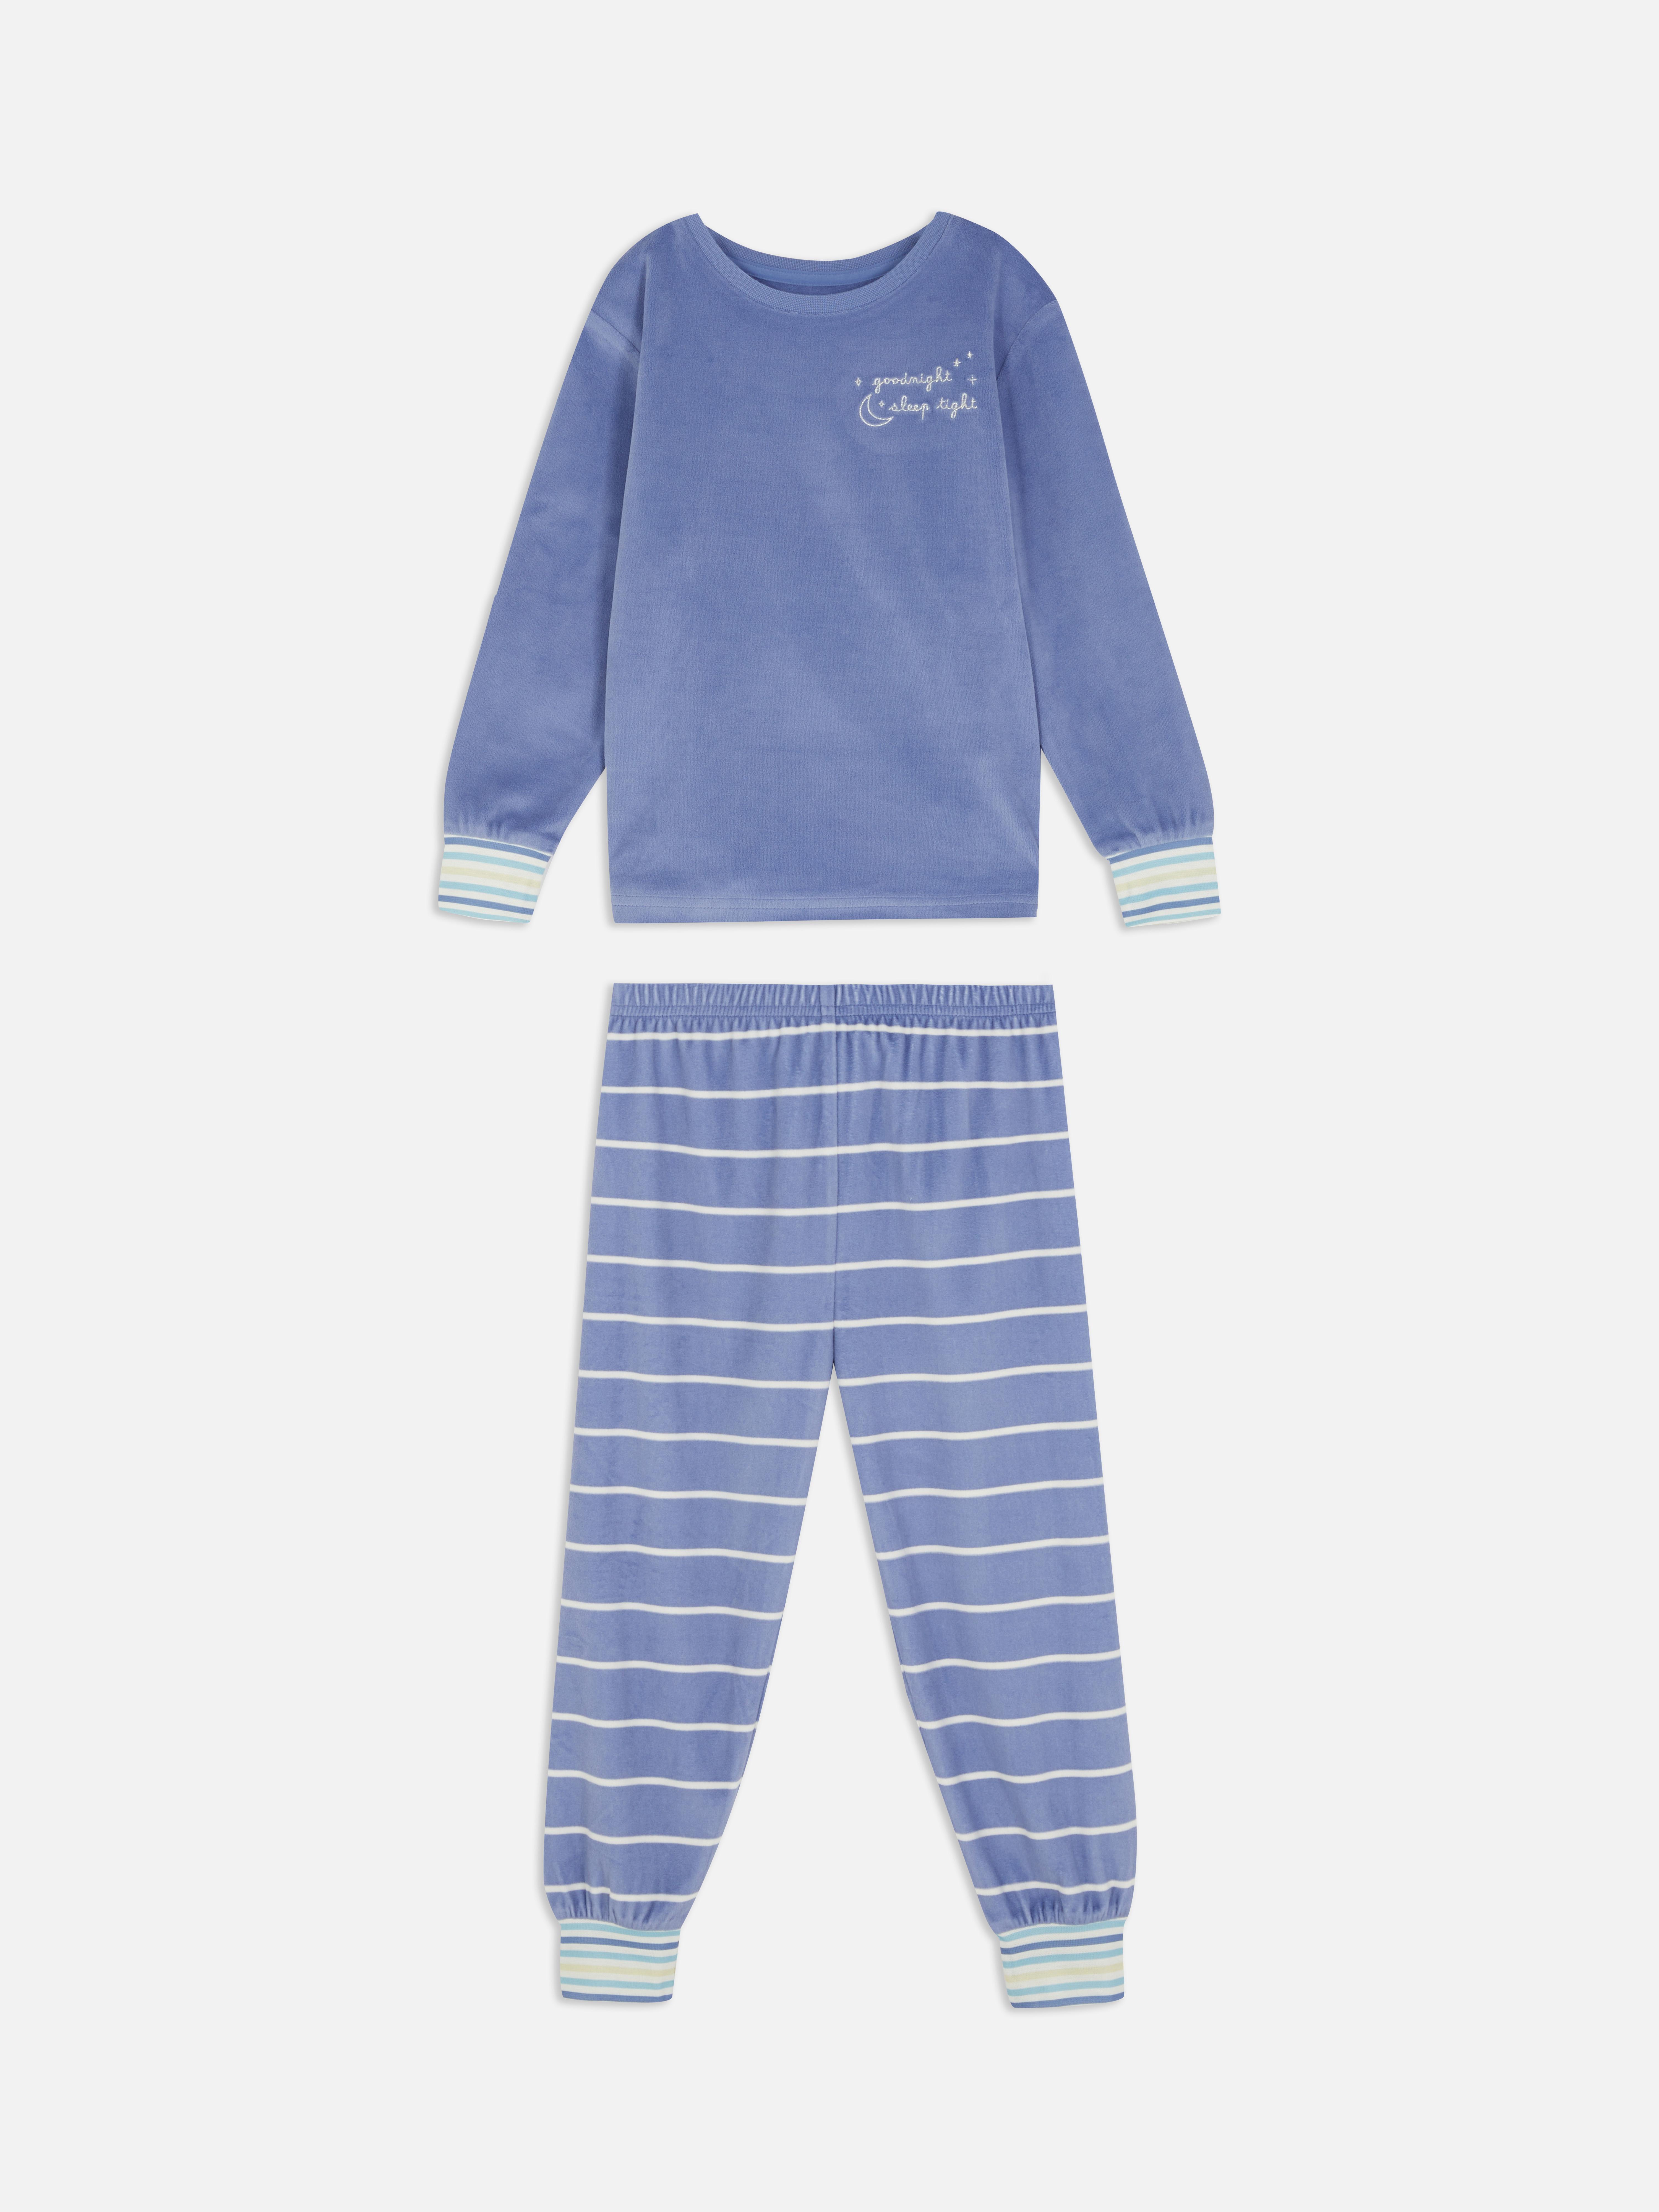 Embroidered Minky Pyjama Set